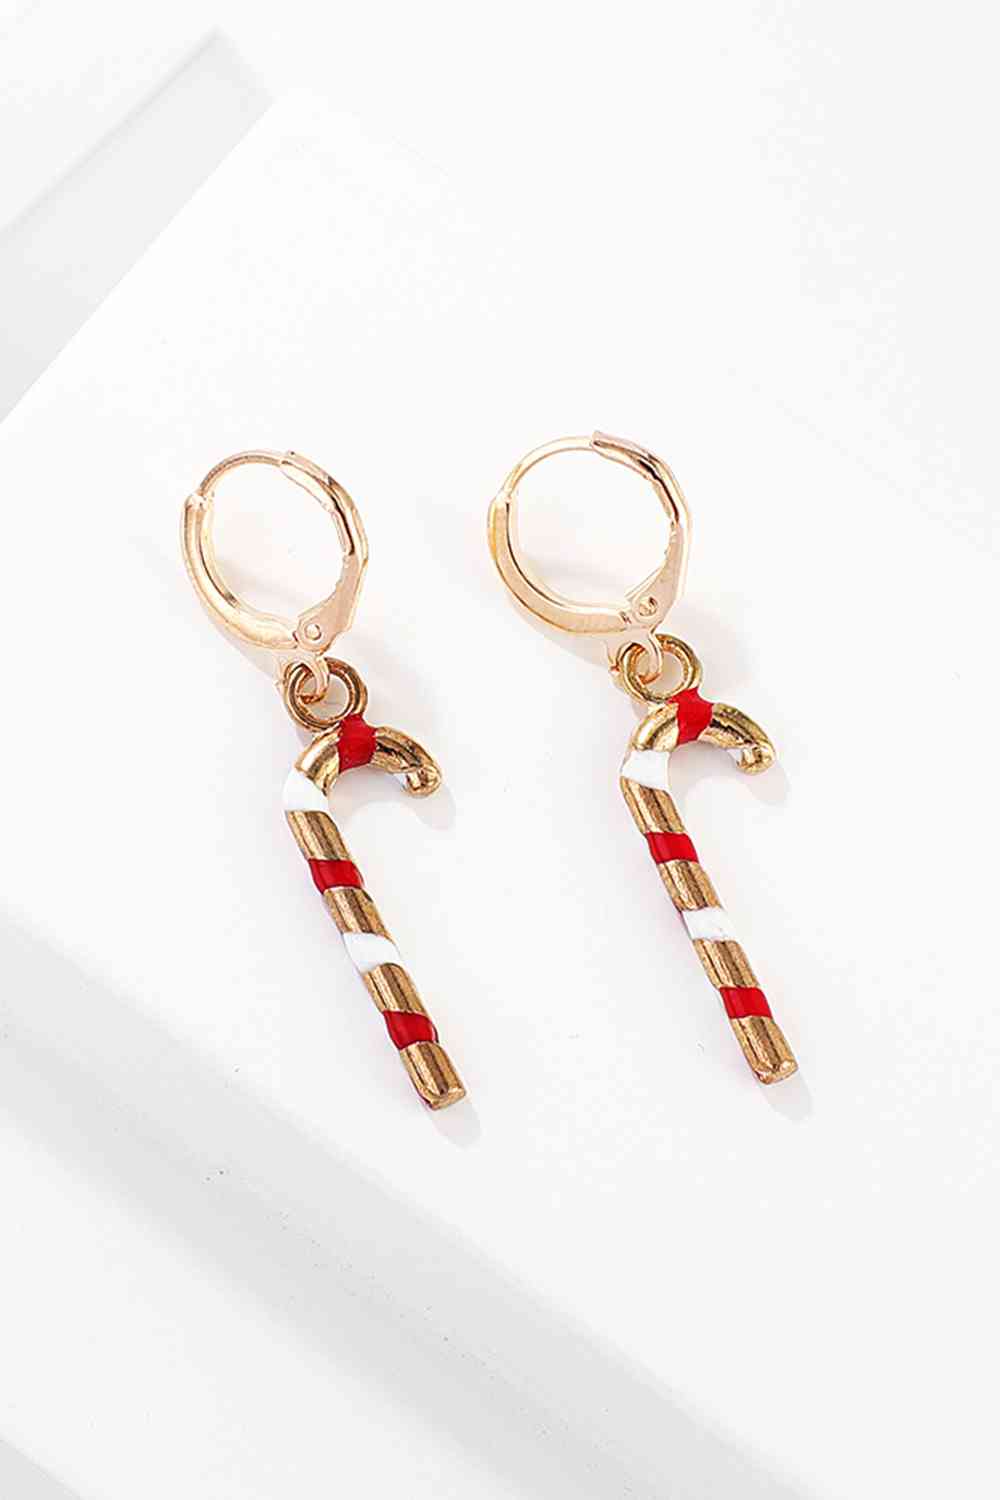 Christmas Theme Alloy Earrings - Women’s Jewelry - Earrings - 25 - 2024